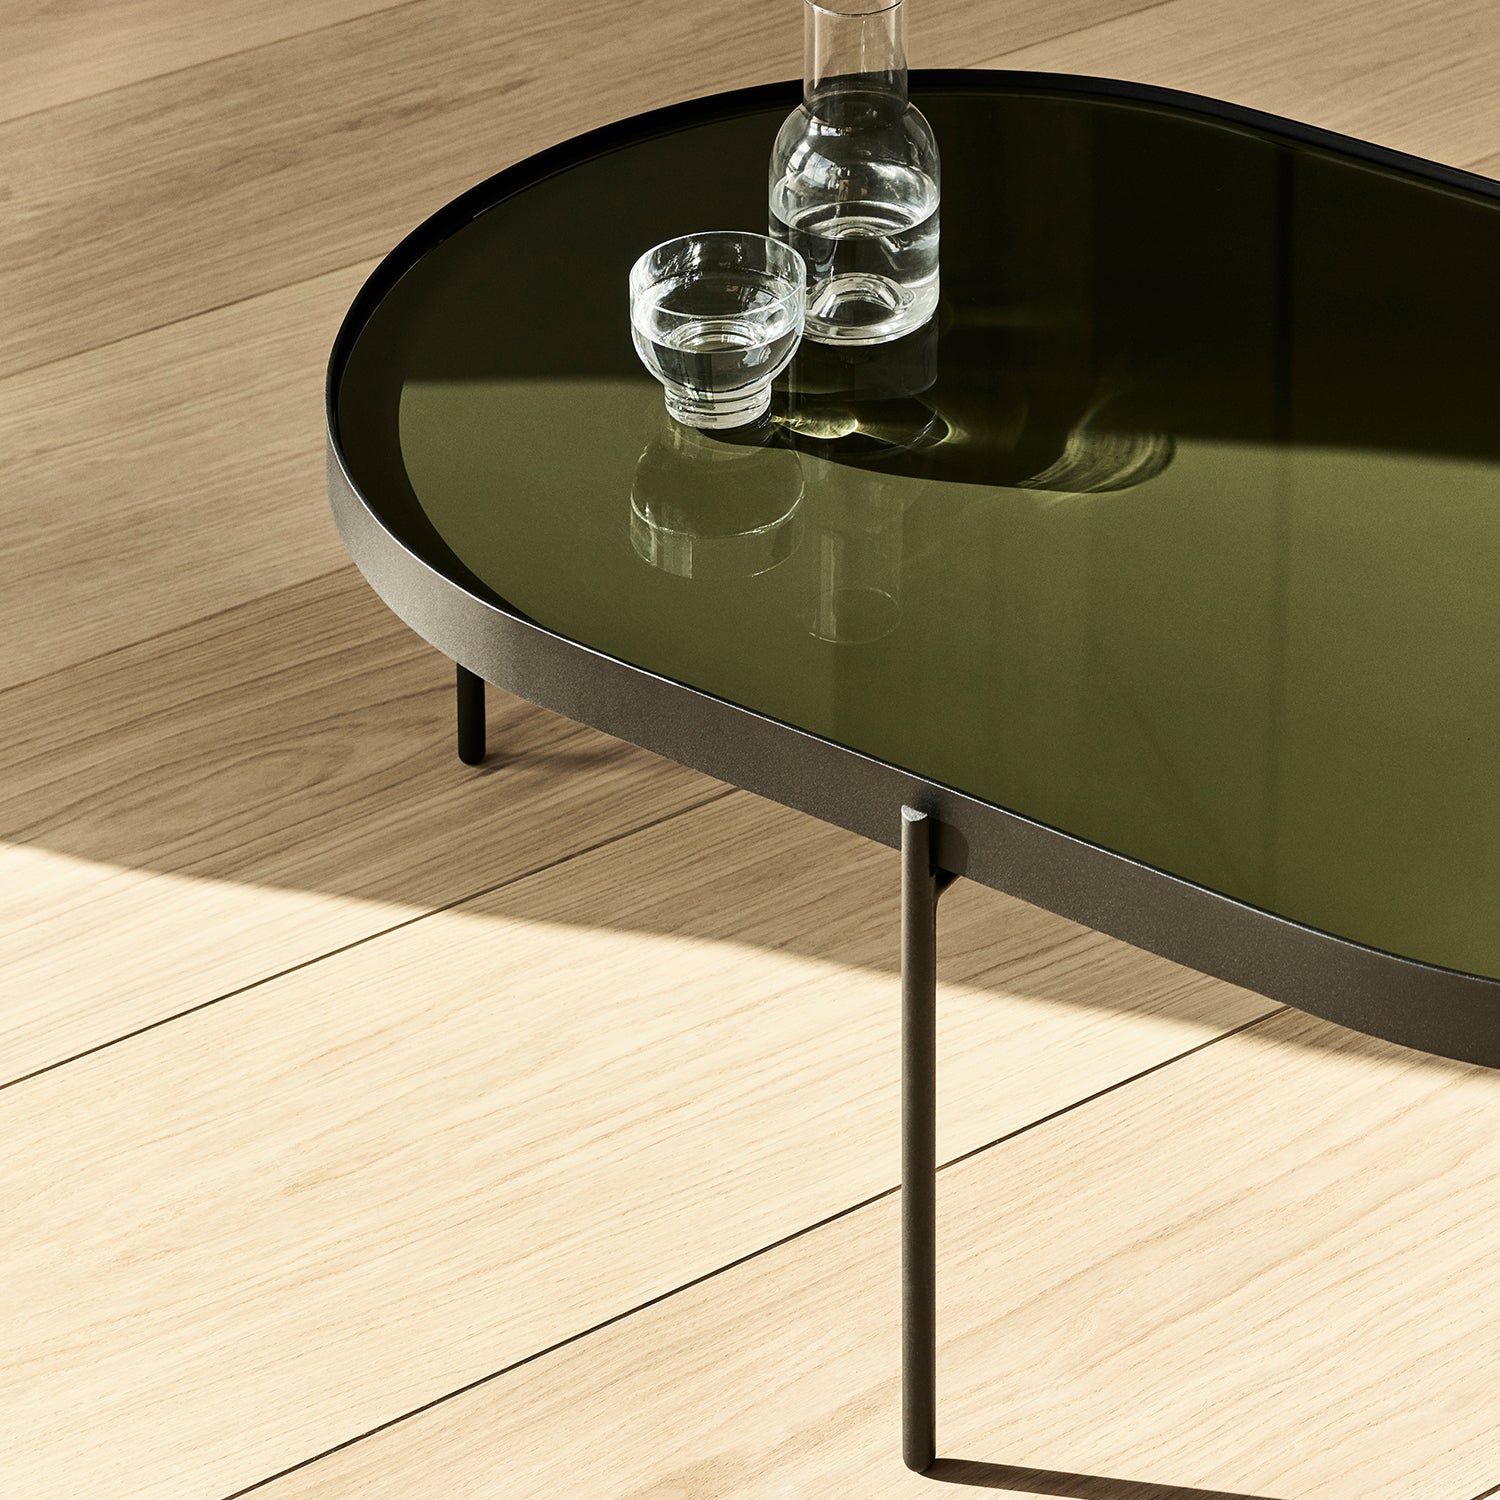 Nono Table - The Design Choice